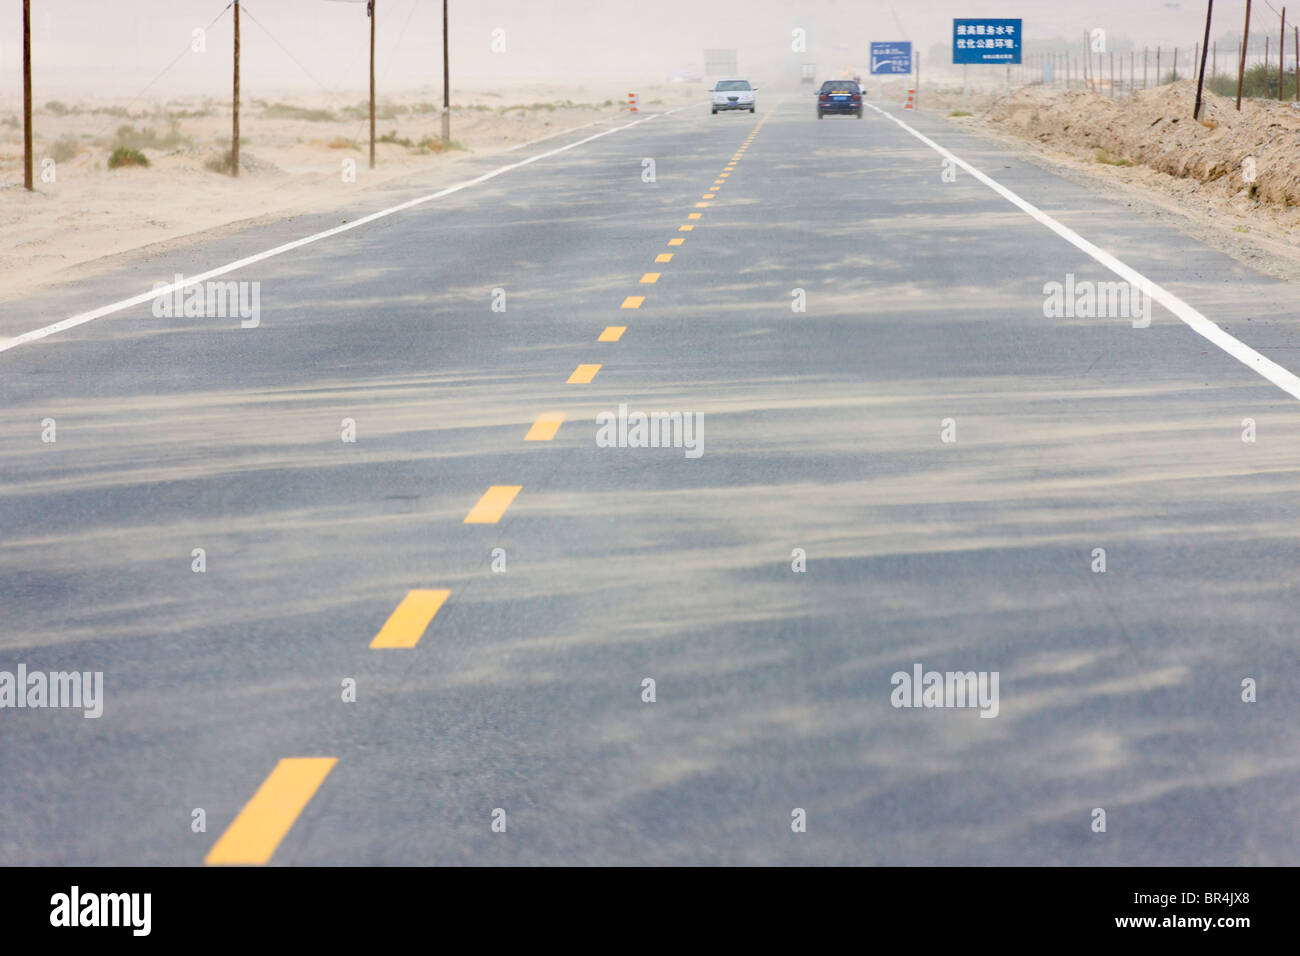 Storm blowing sand onto the road, Hotan, Xinjiang, China Stock Photo